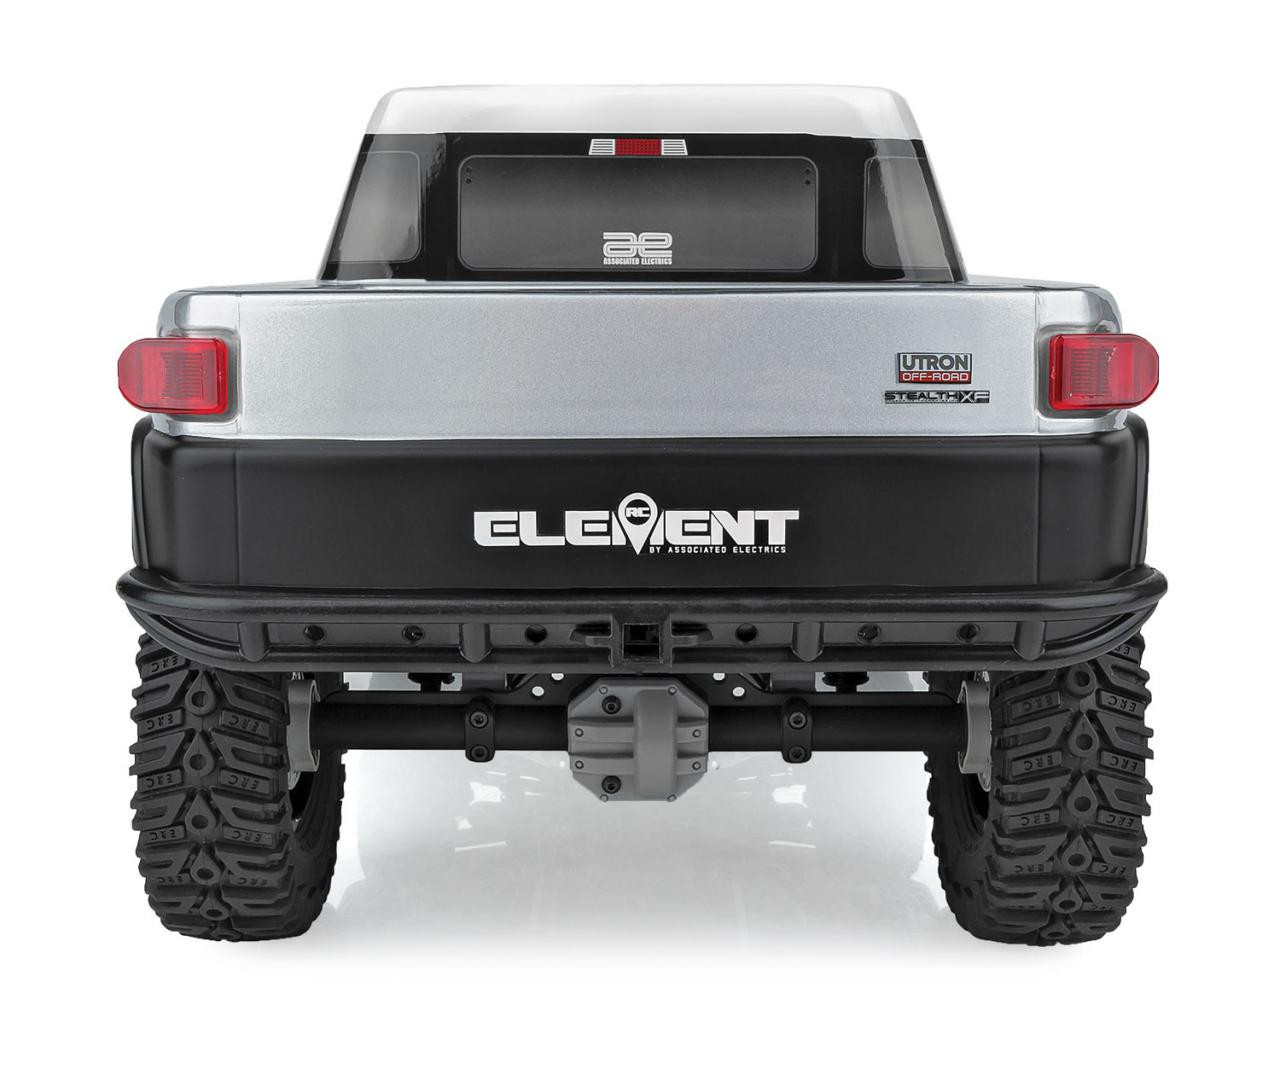 Element RC Enduro Utron SE IFS 2 4X4 RTR 1/10 Trail Truck (Grey) w/2.4GHz Radio